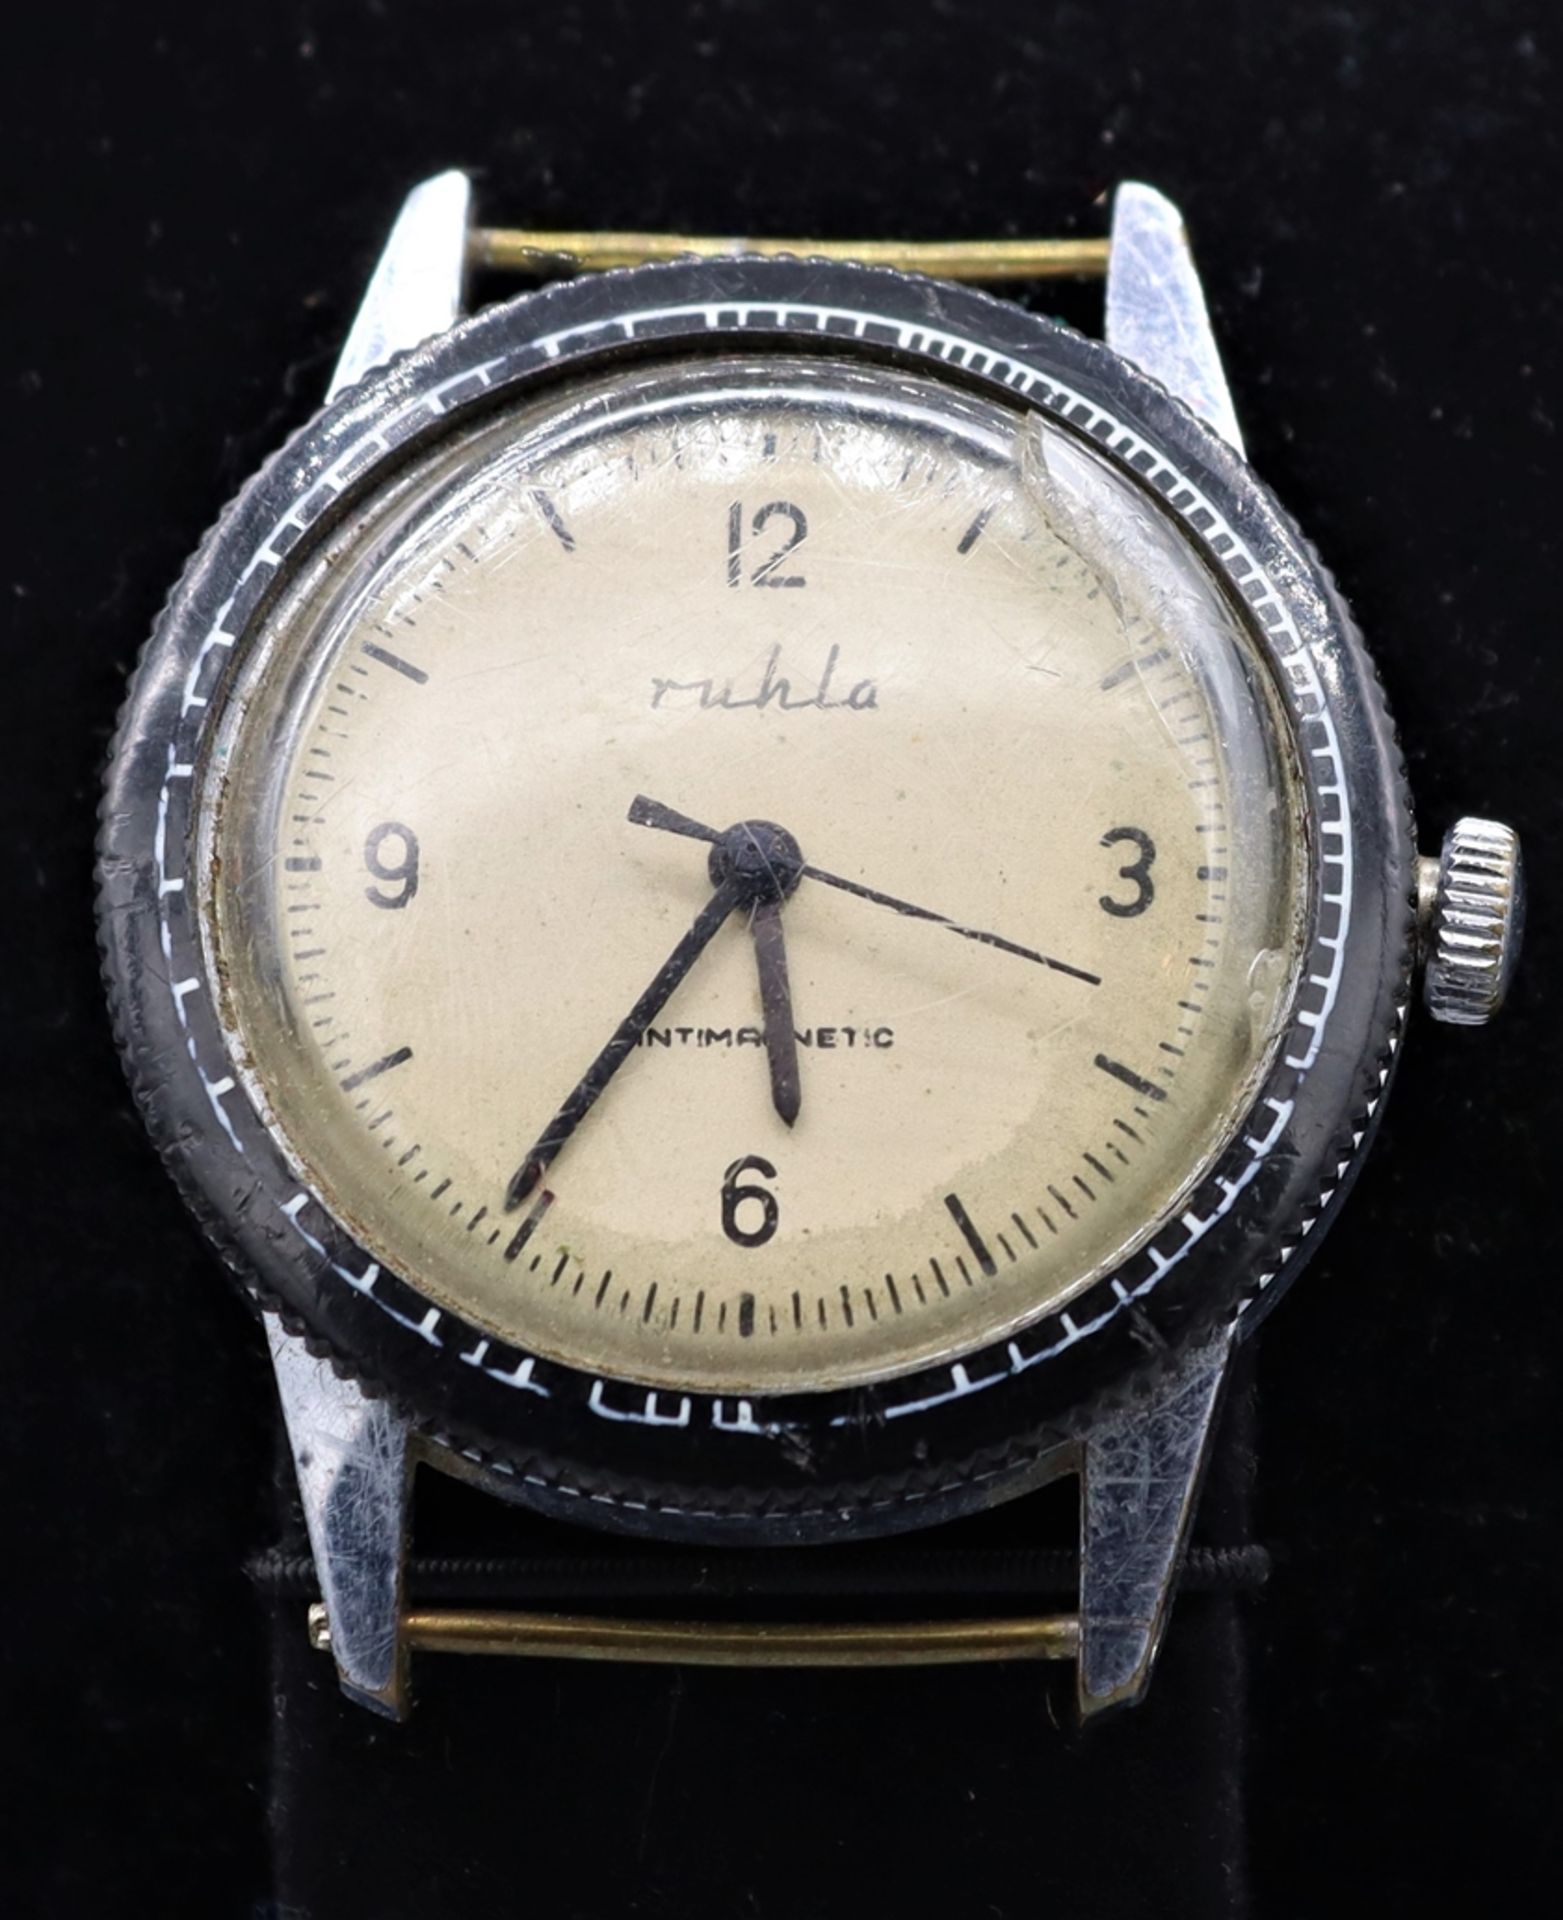 Herren Armbanduhr ohne Armband, Ruhla 70er Jahre DDR, helles Ziffernblatt mit arabischen Ziffern, T